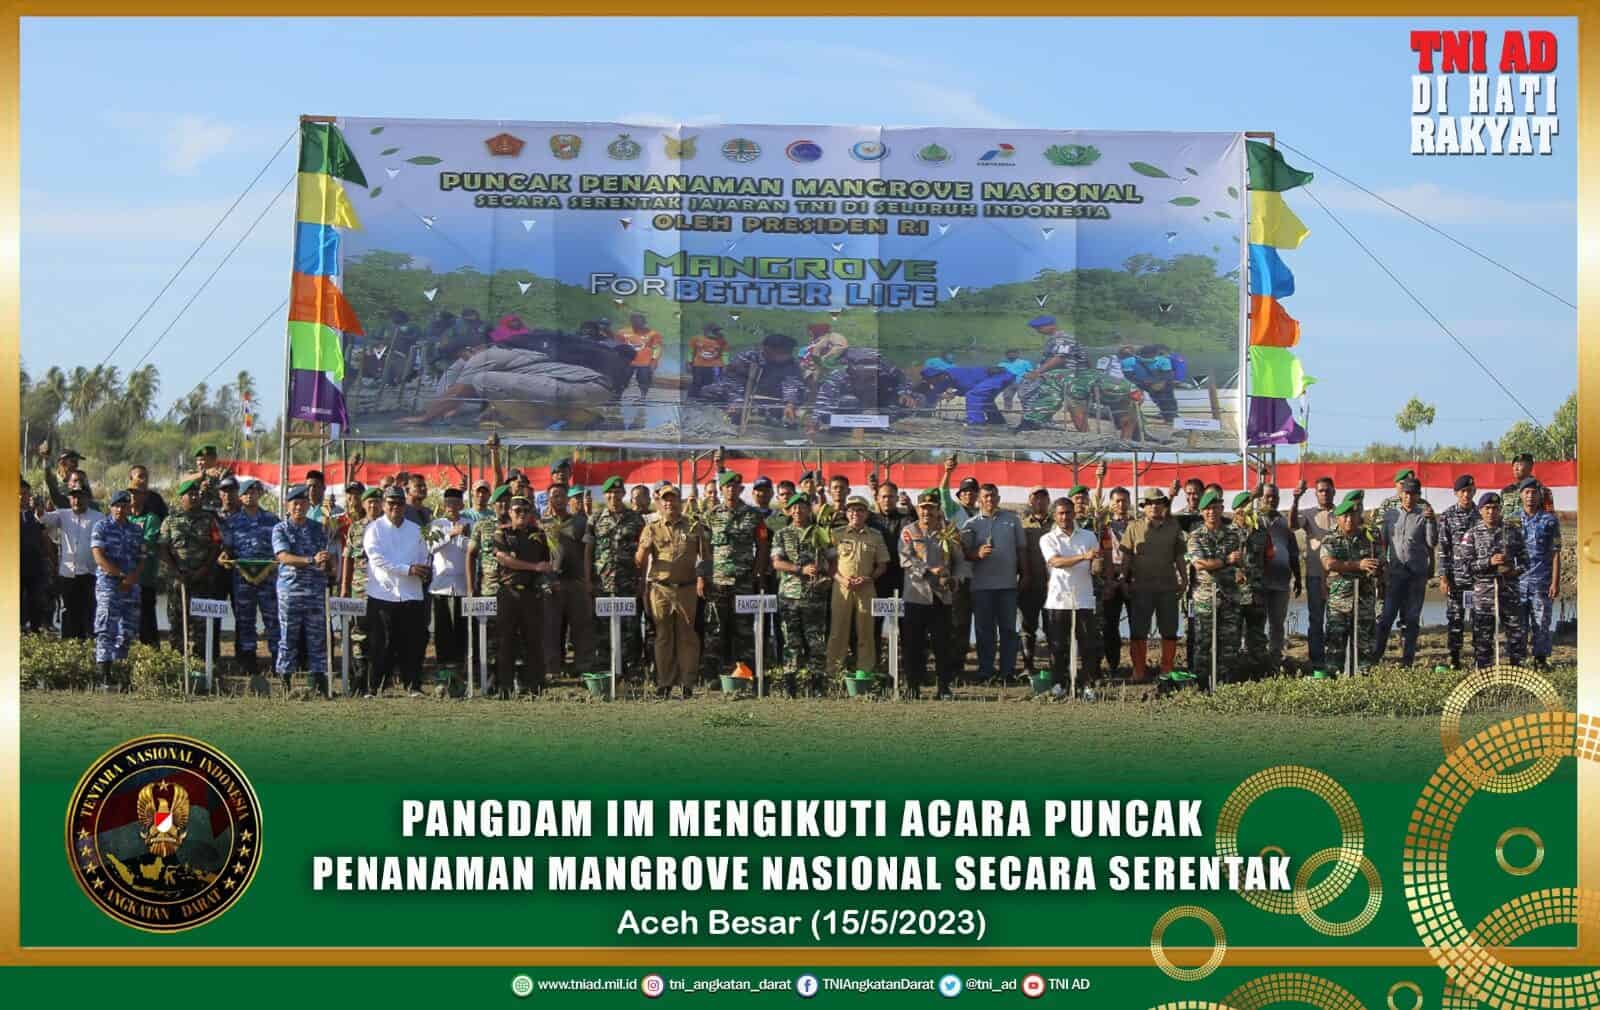 Pangdam IM Mengikuti Acara Puncak Penanaman Mangrove Nasional Secara Serentak Jajaran TNI di Seluruh Indonesia